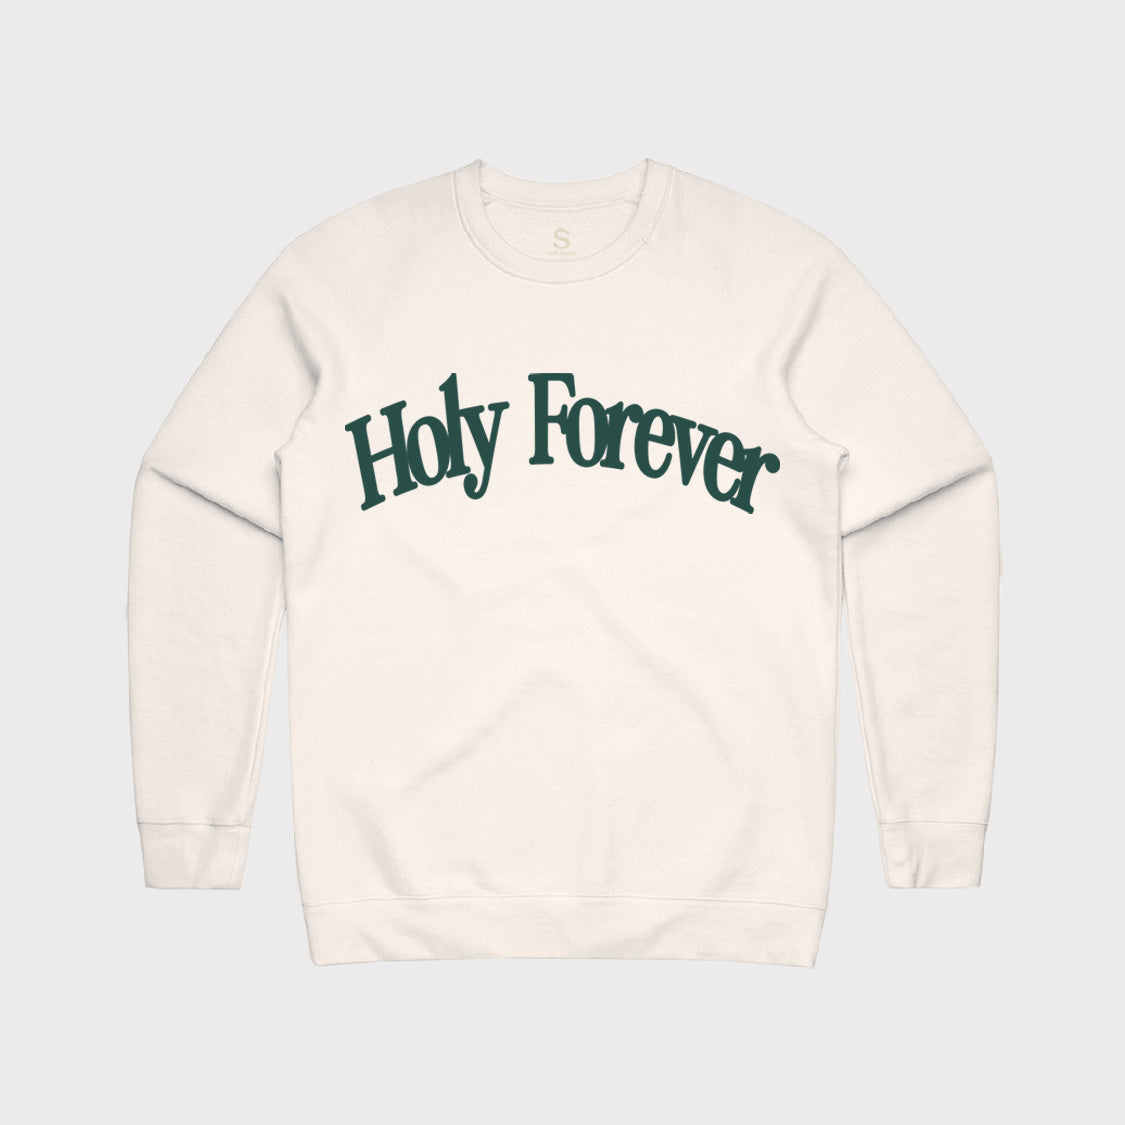 Holy Forever  Bethel Music